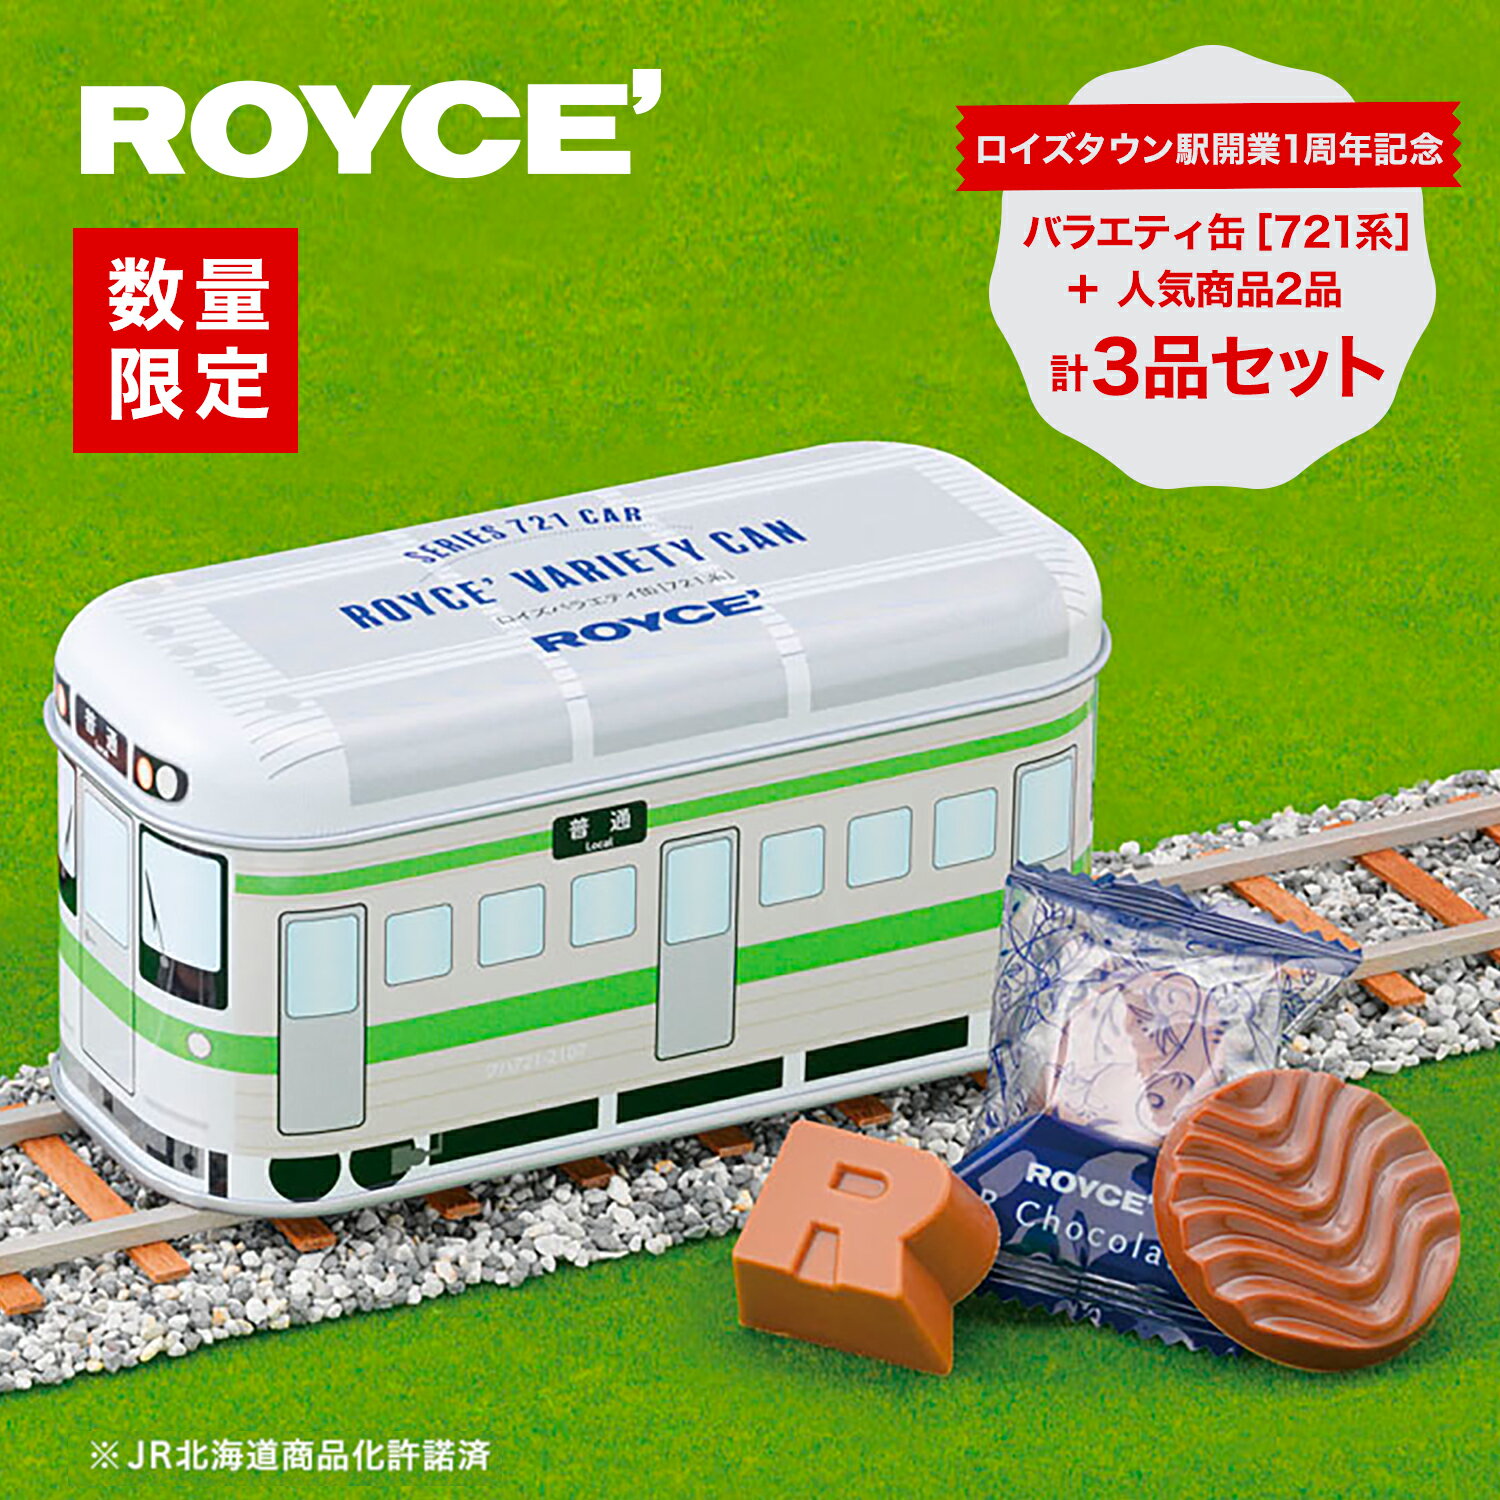 ROYCE'ロイズバラエティ缶[721系]含む3品セット